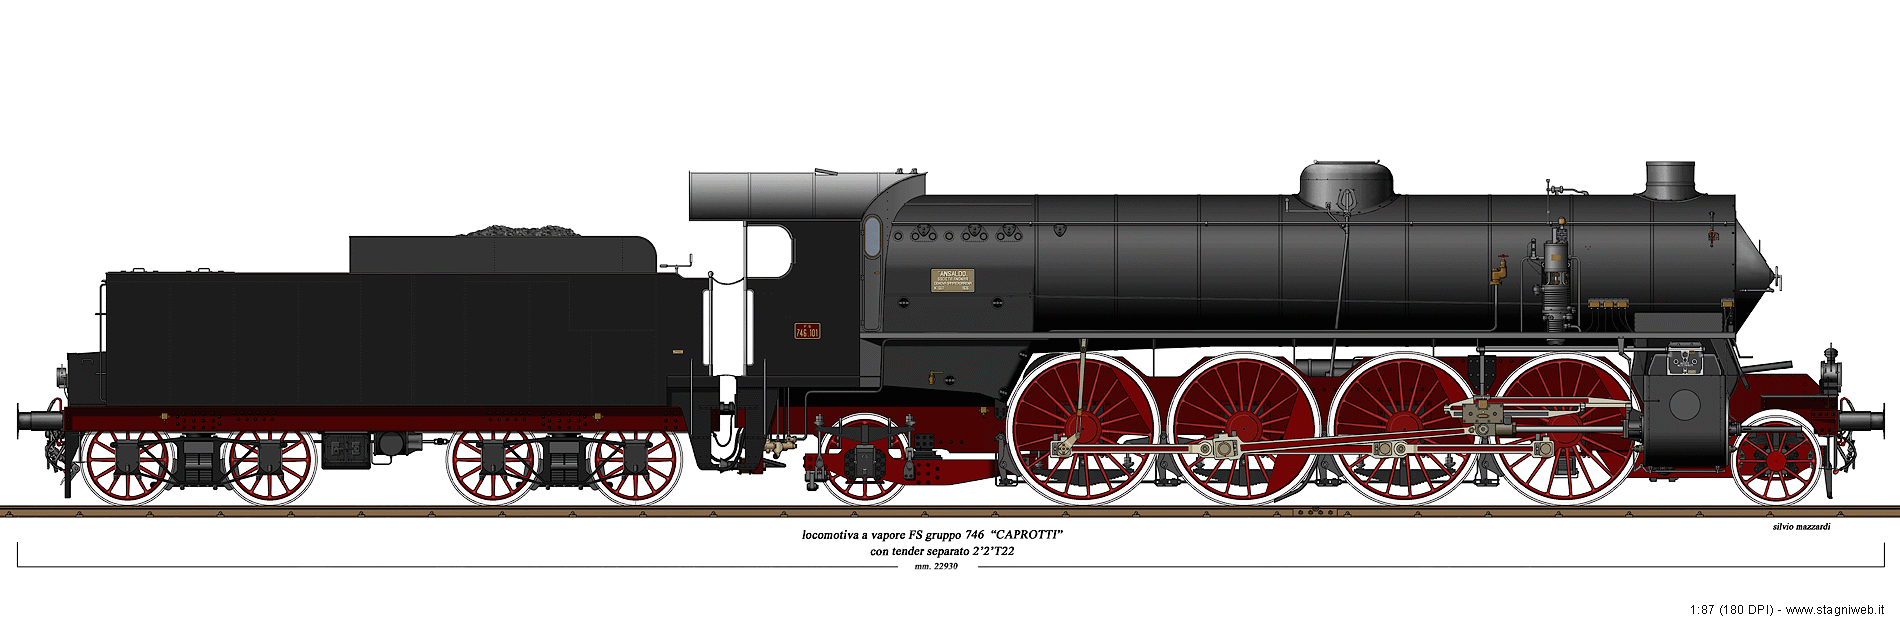 Locomotive a vapore con tender separato - Gr. 746 Caprotti